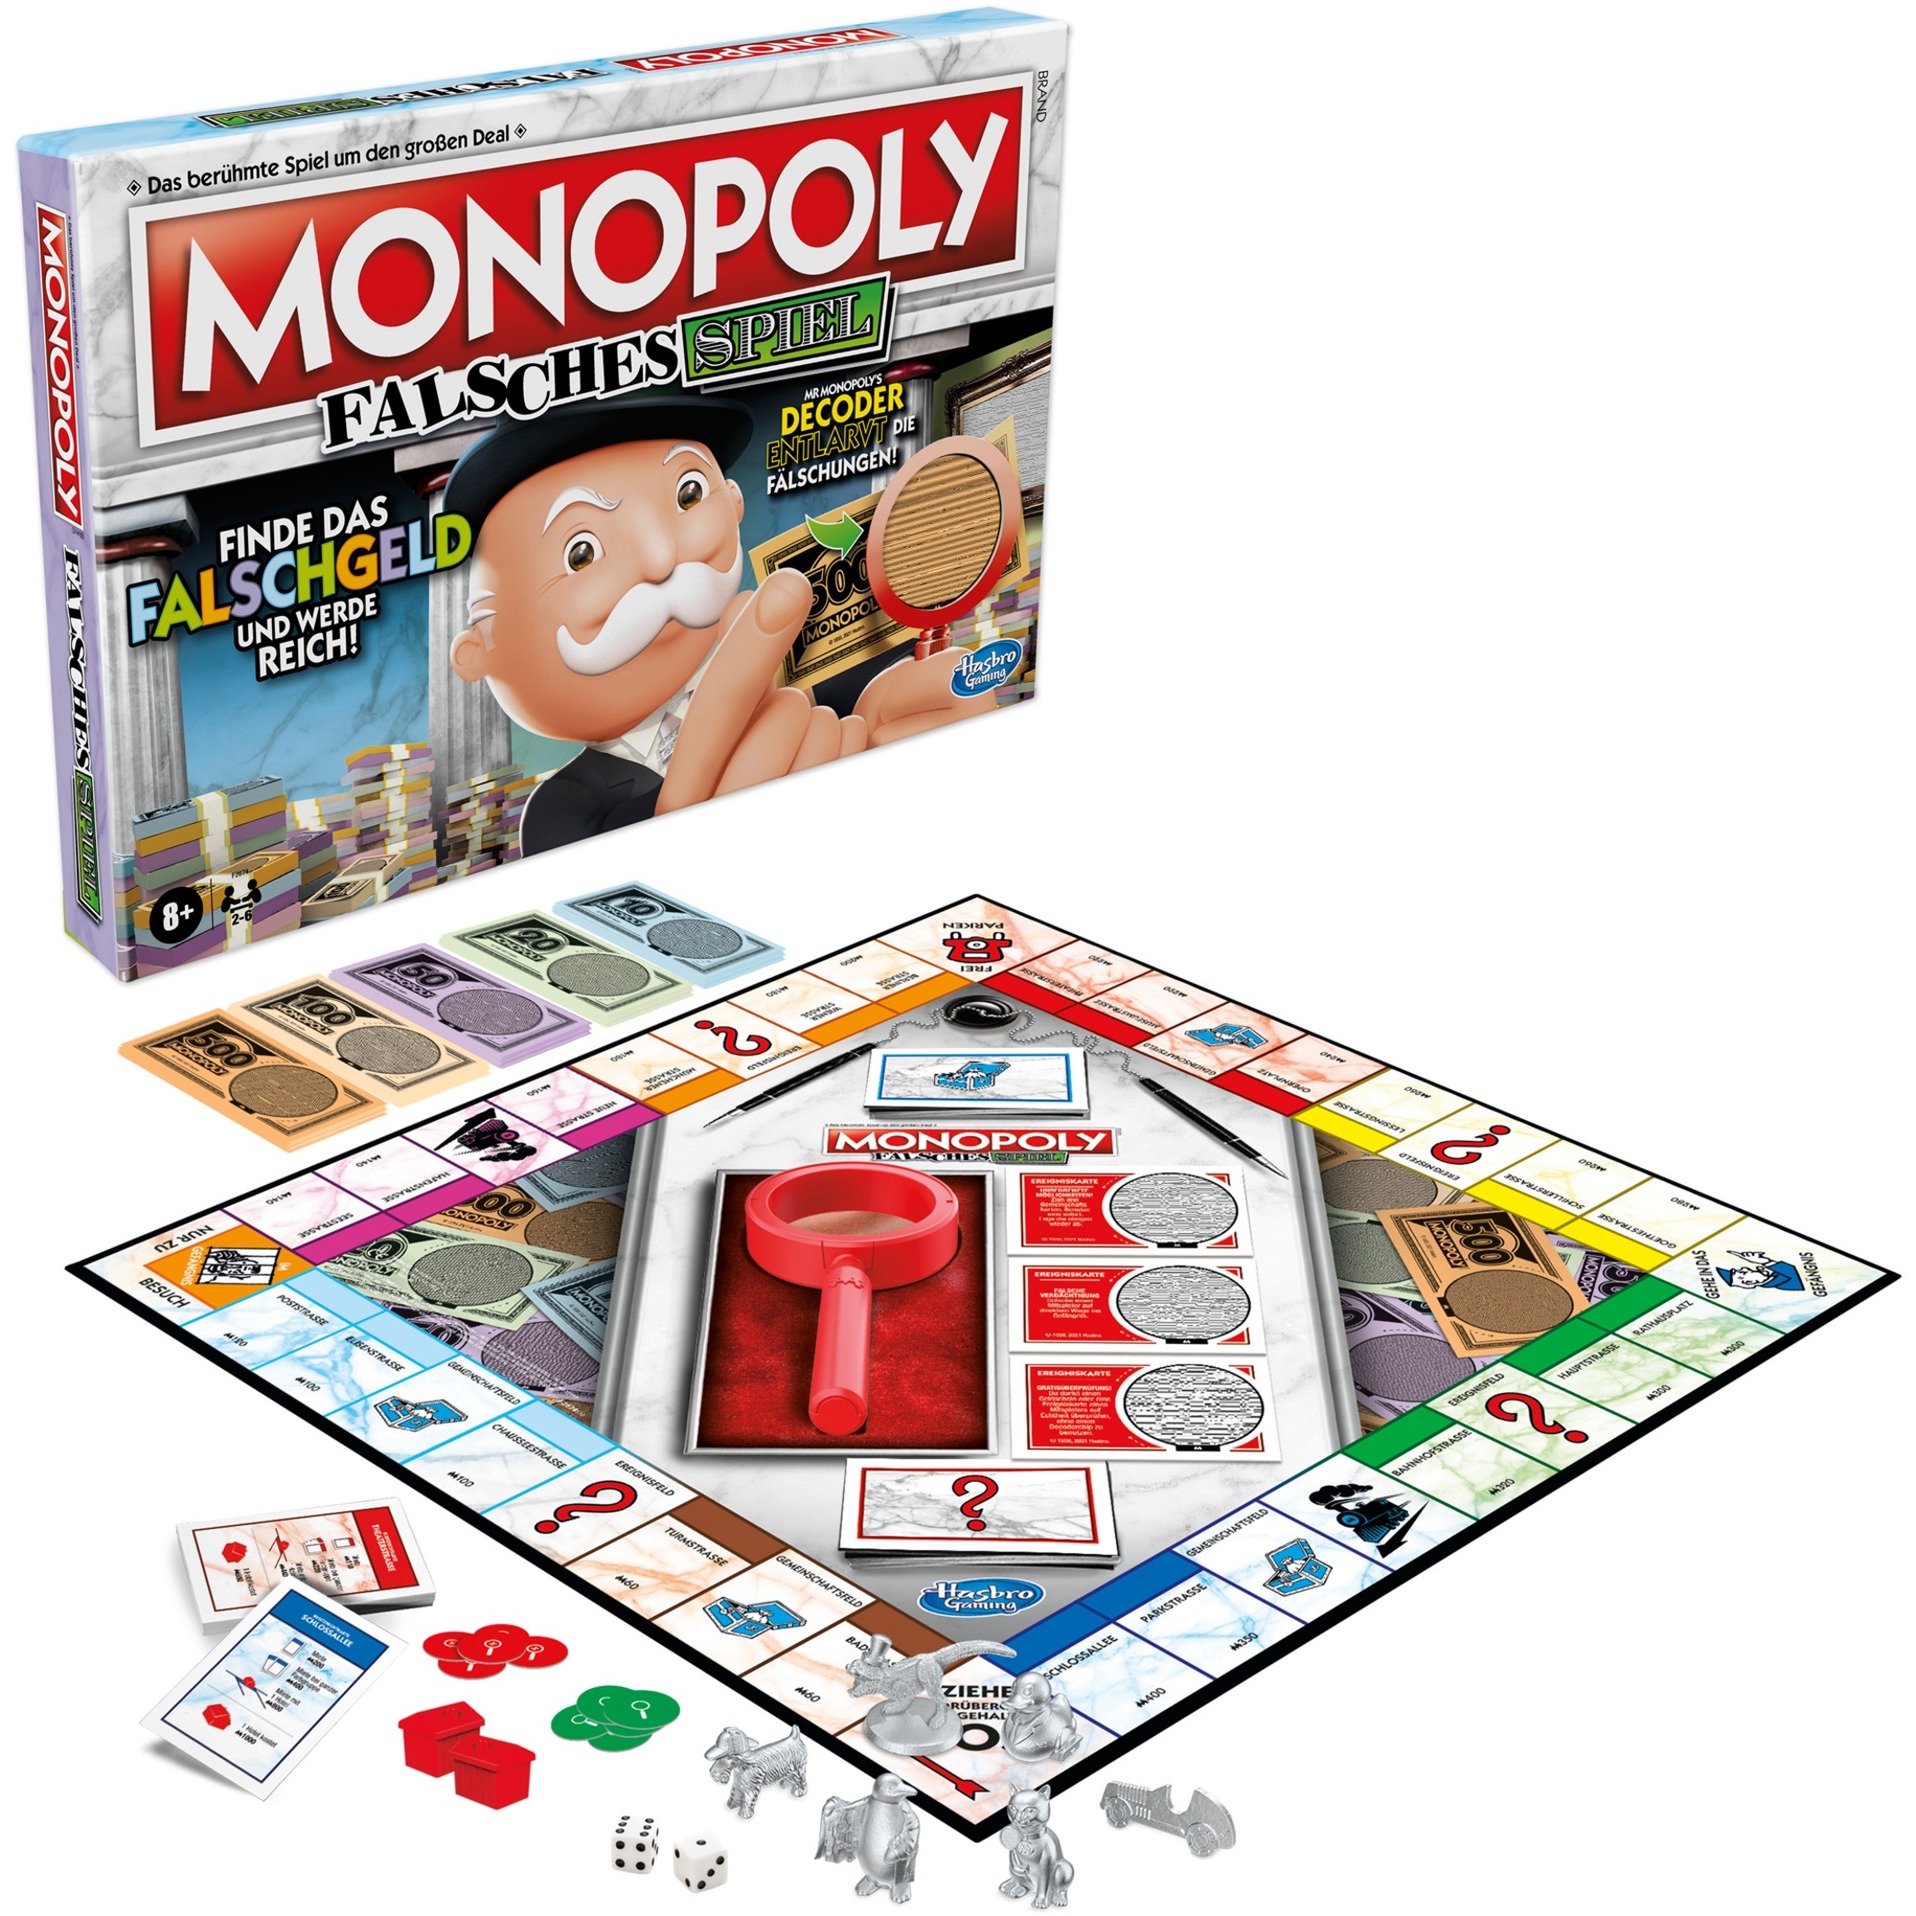 Image of Alternate - Monopoly falsches Spiel, Brettspiel online einkaufen bei Alternate